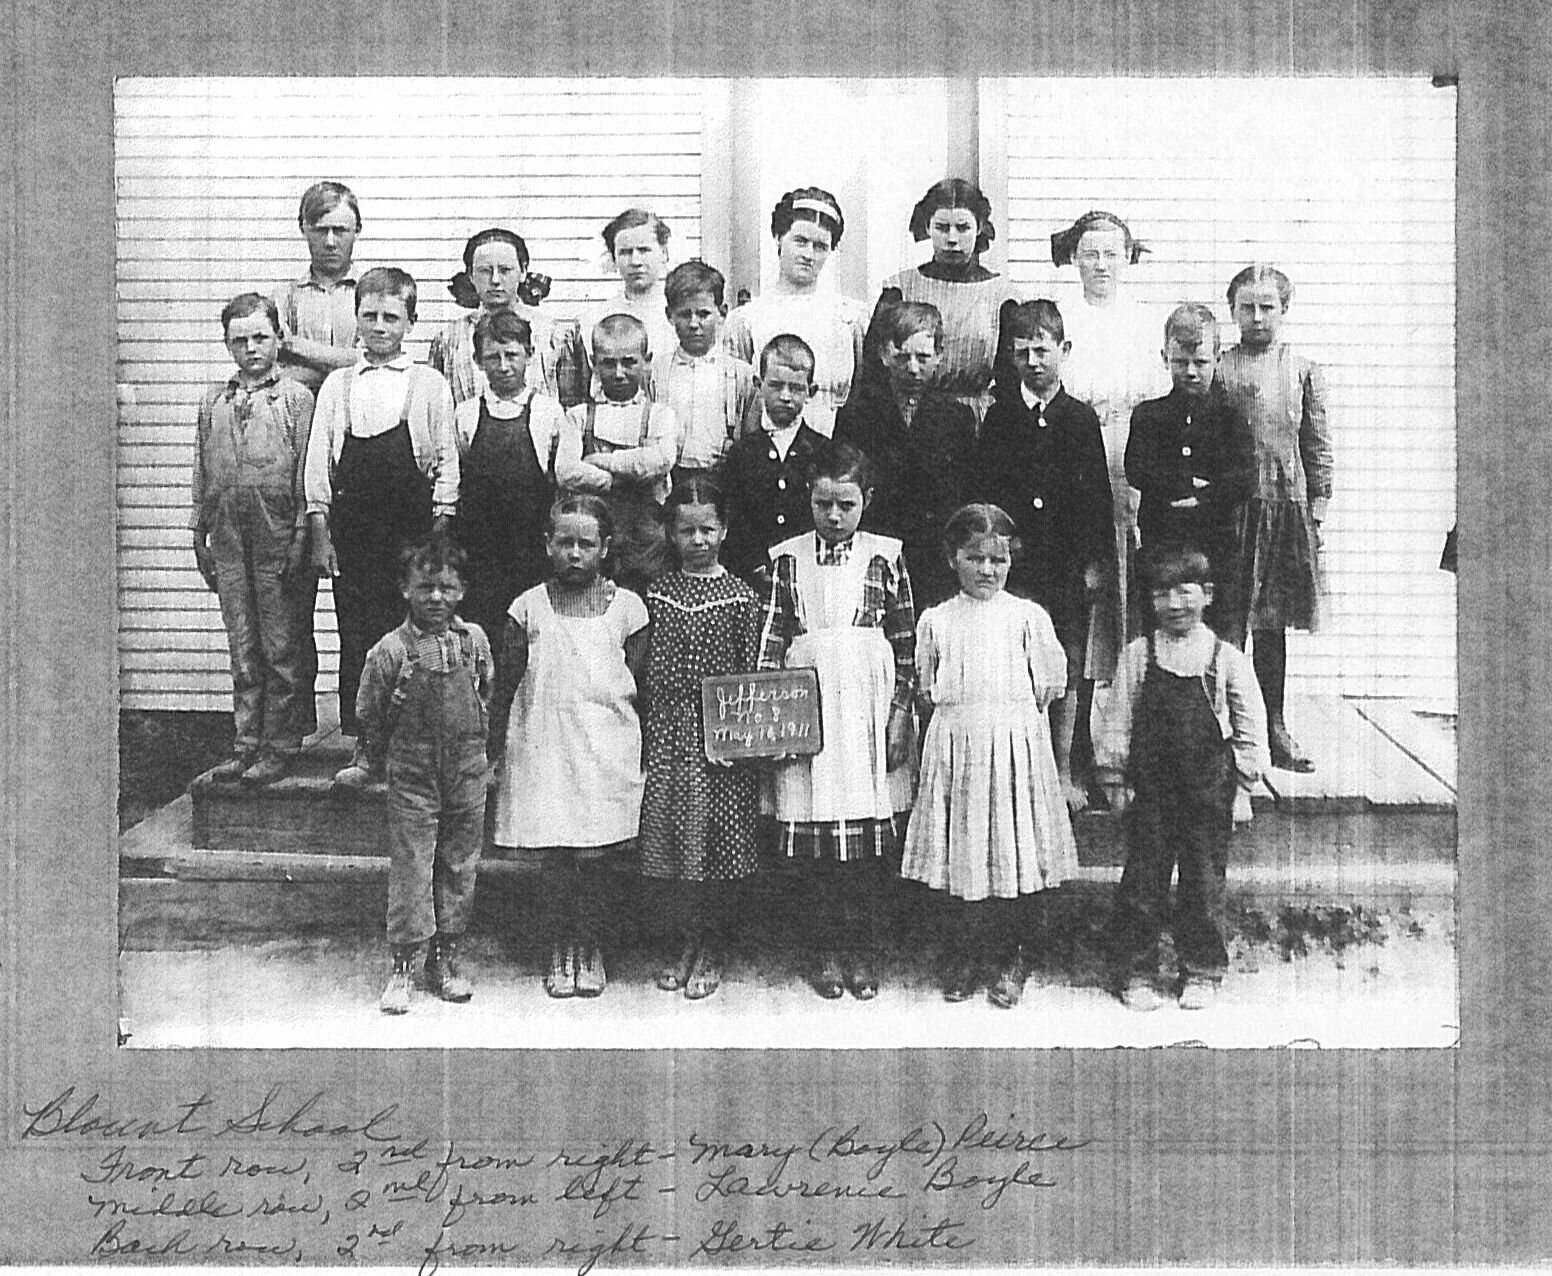  Blount School 1911  